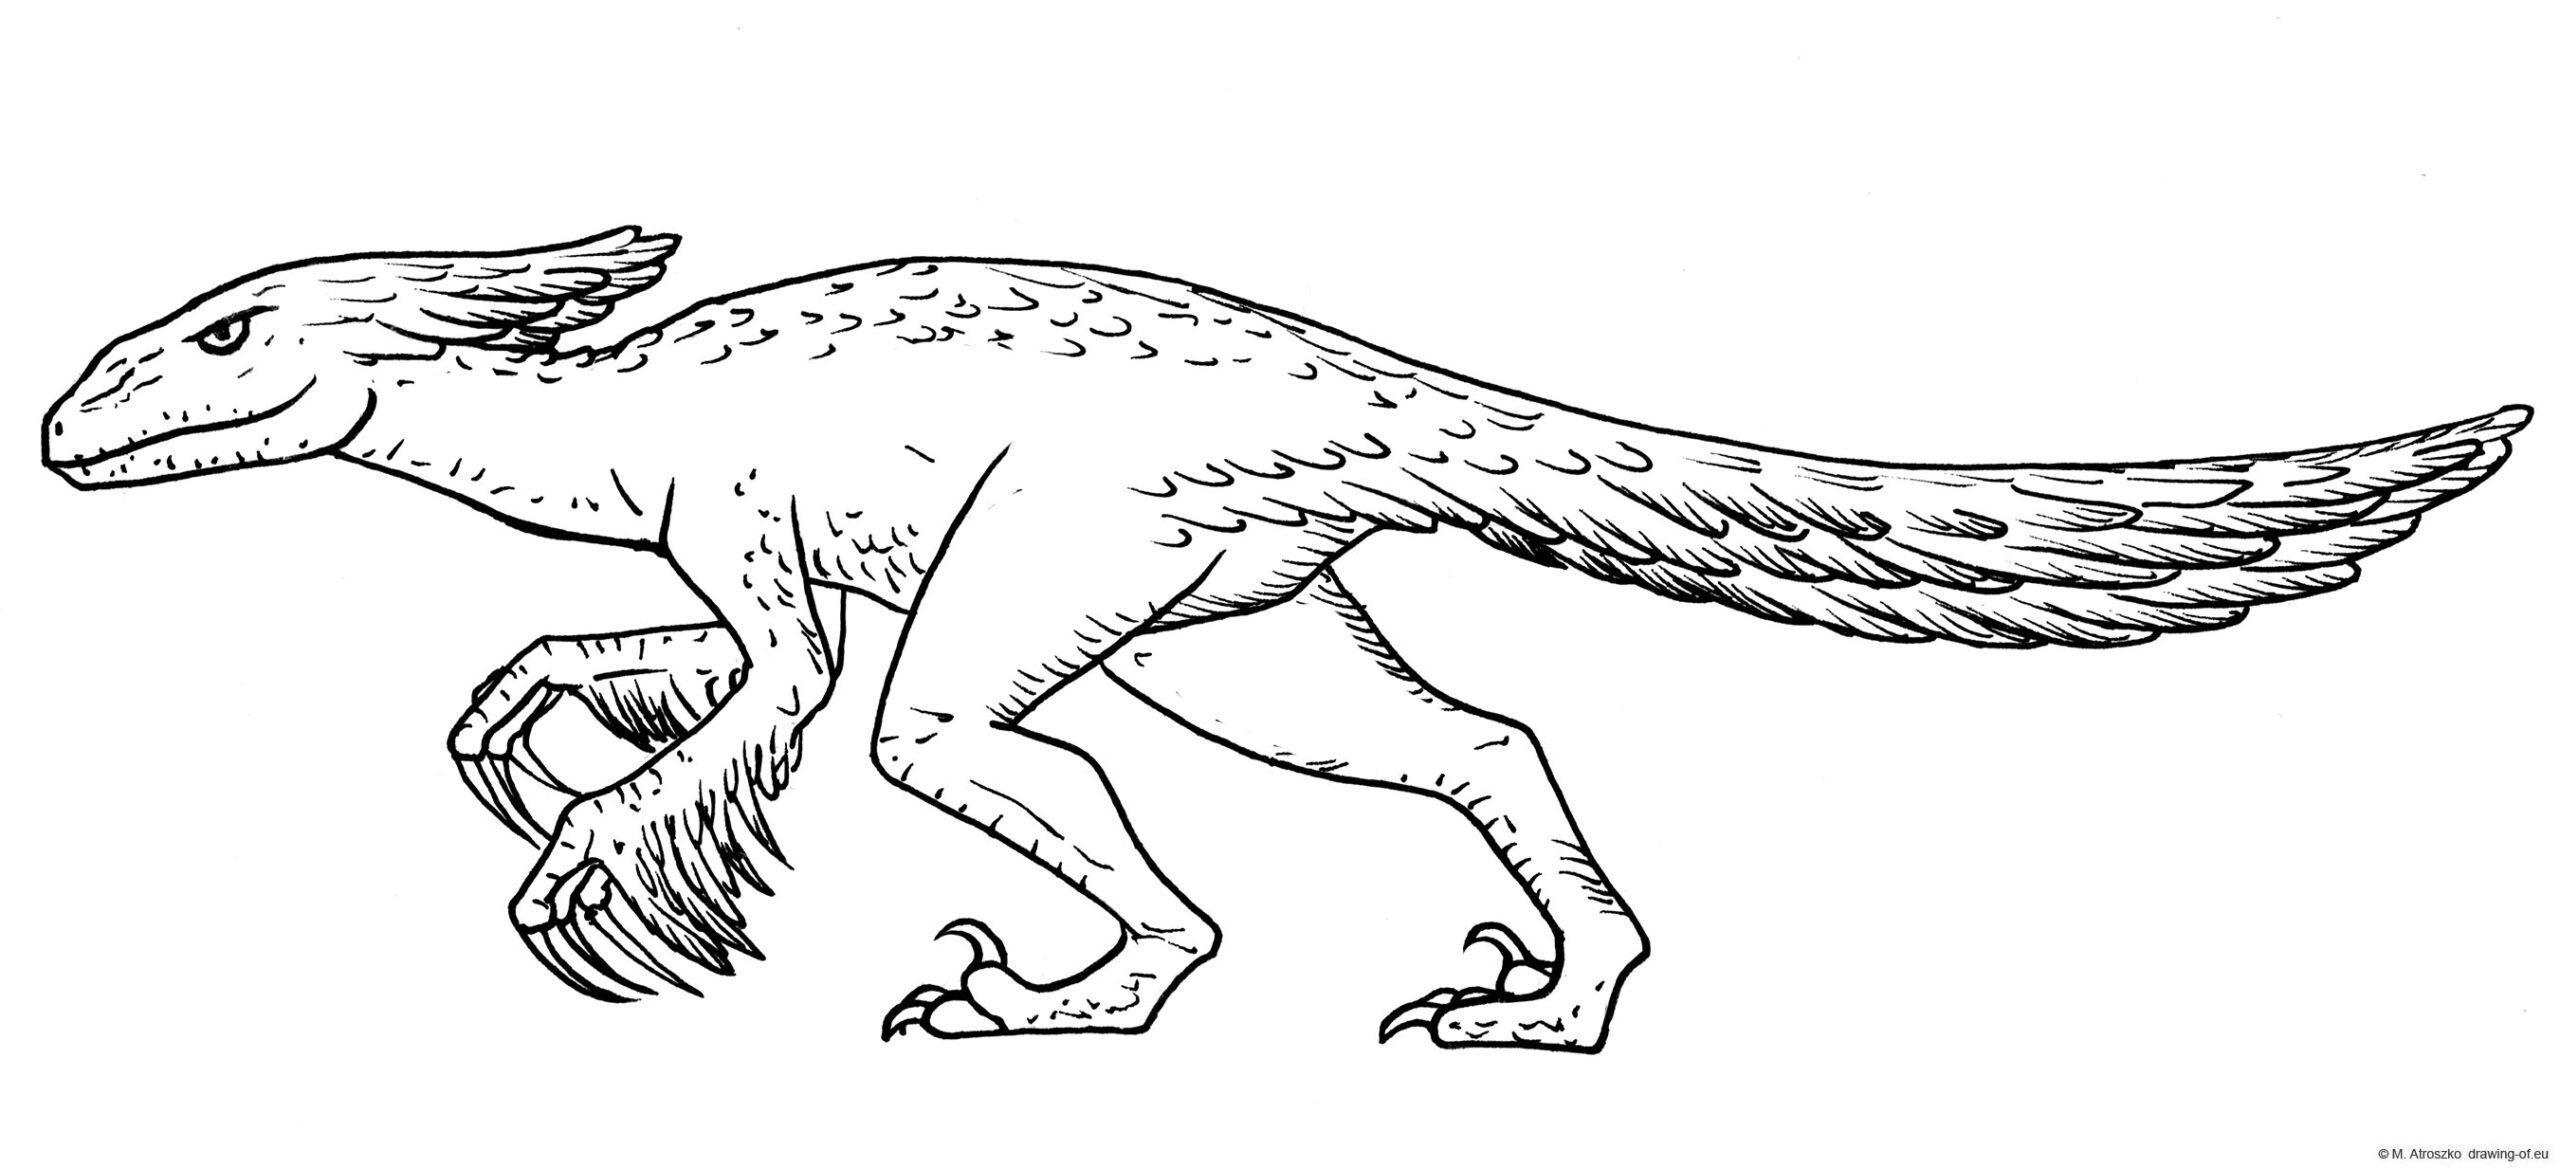 pyroraptor